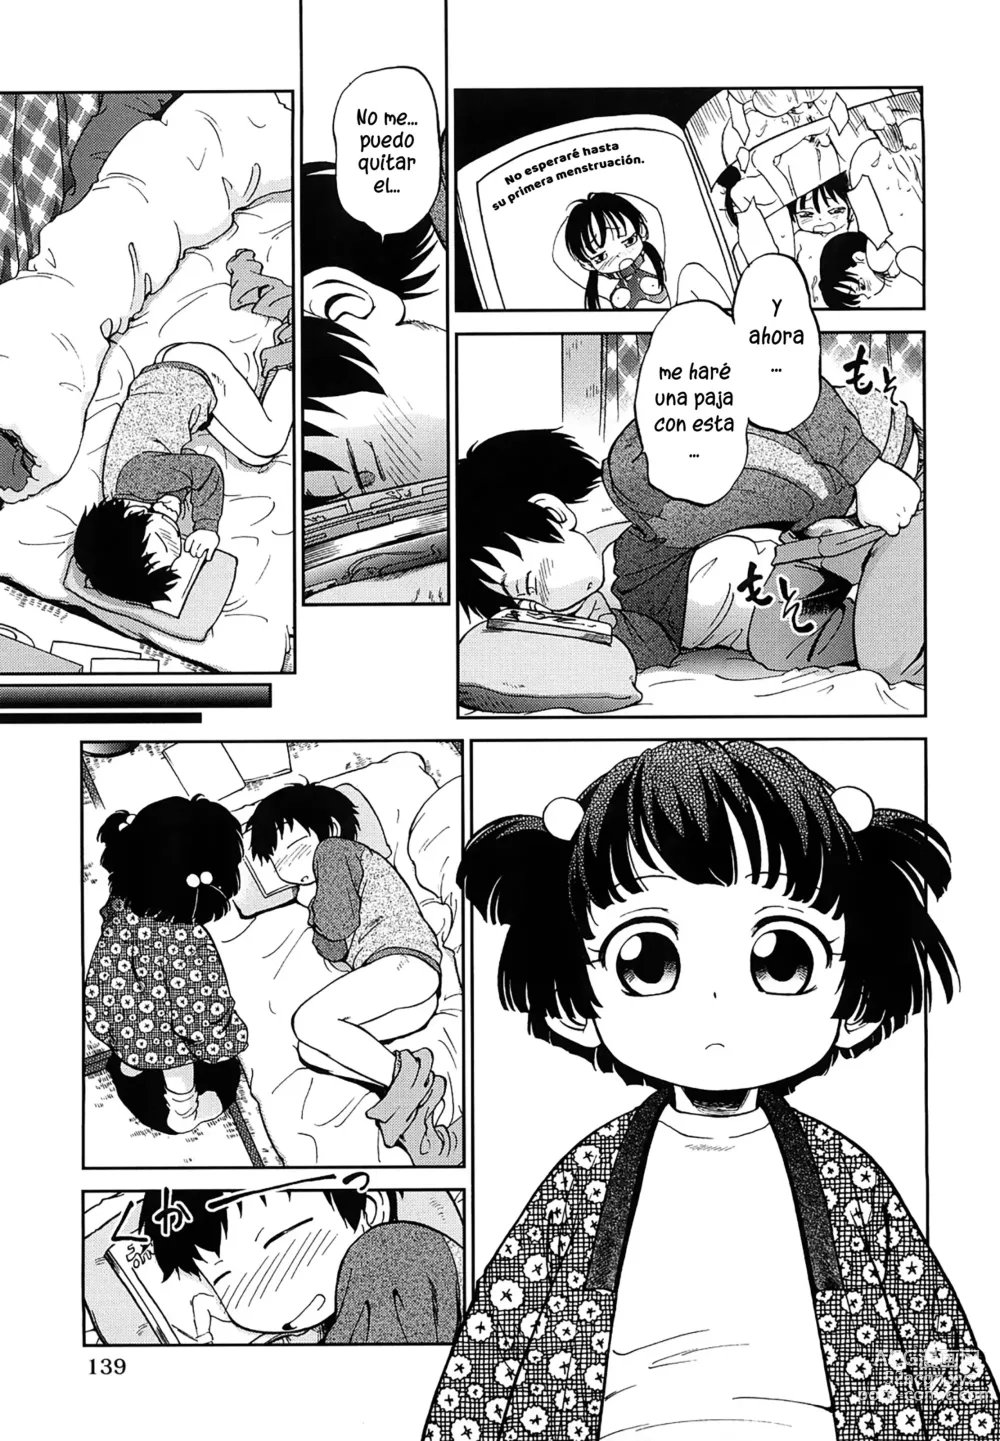 Page 3 of manga 1LDK Hi atari ryoukou warabe tsuki